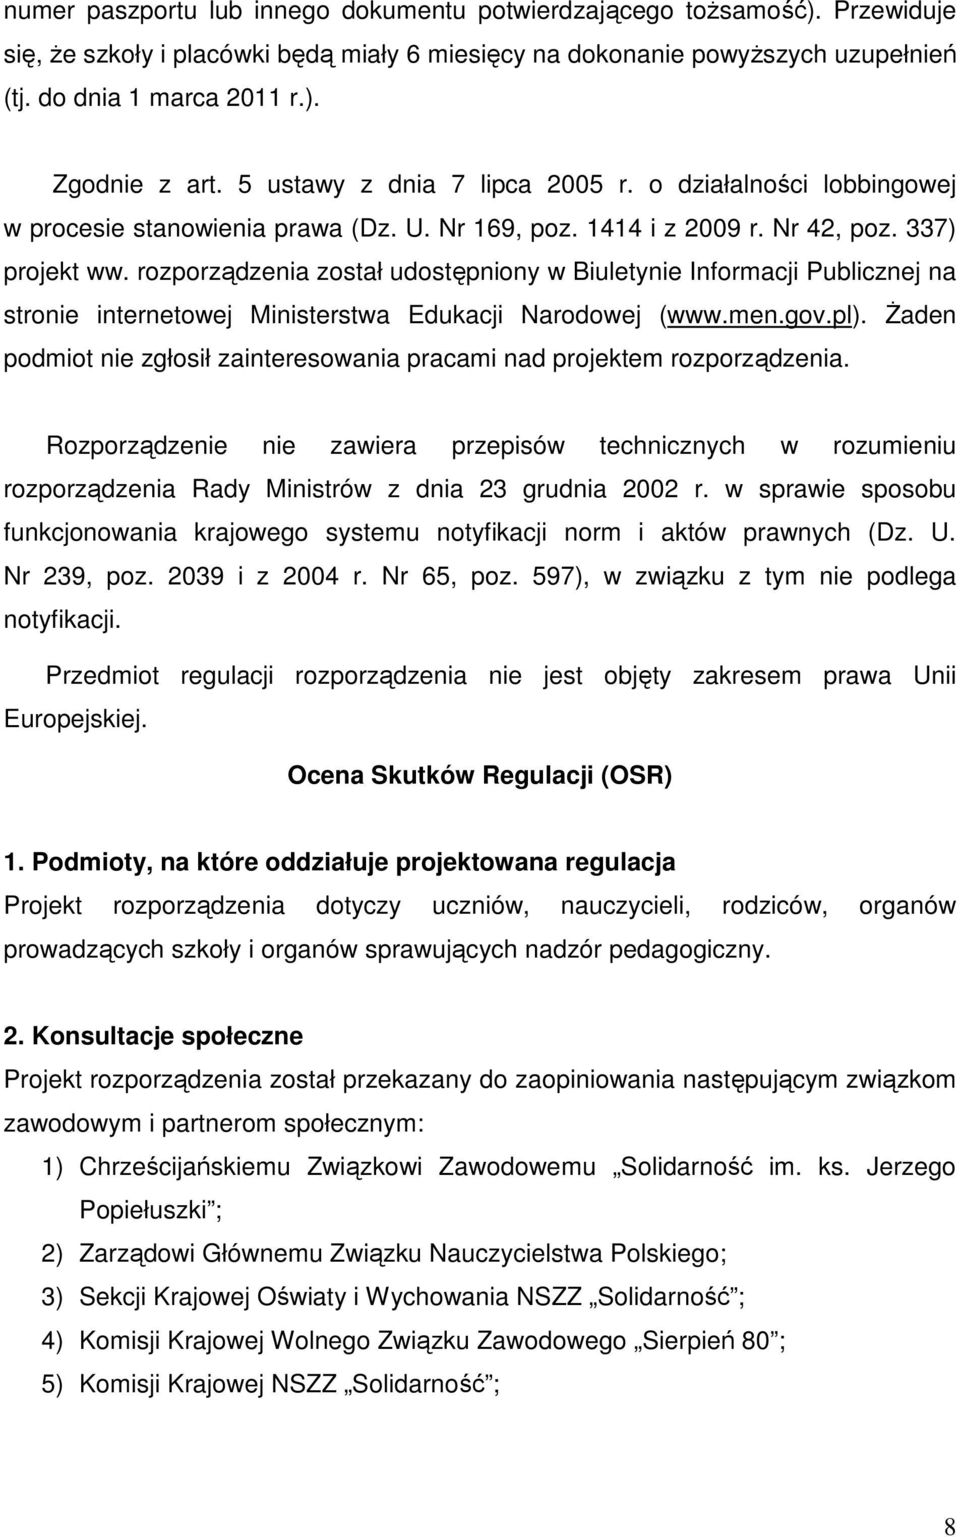 rozporządzenia został udostępniony w Biuletynie Informacji Publicznej na stronie internetowej Ministerstwa Edukacji Narodowej (www.men.gov.pl).